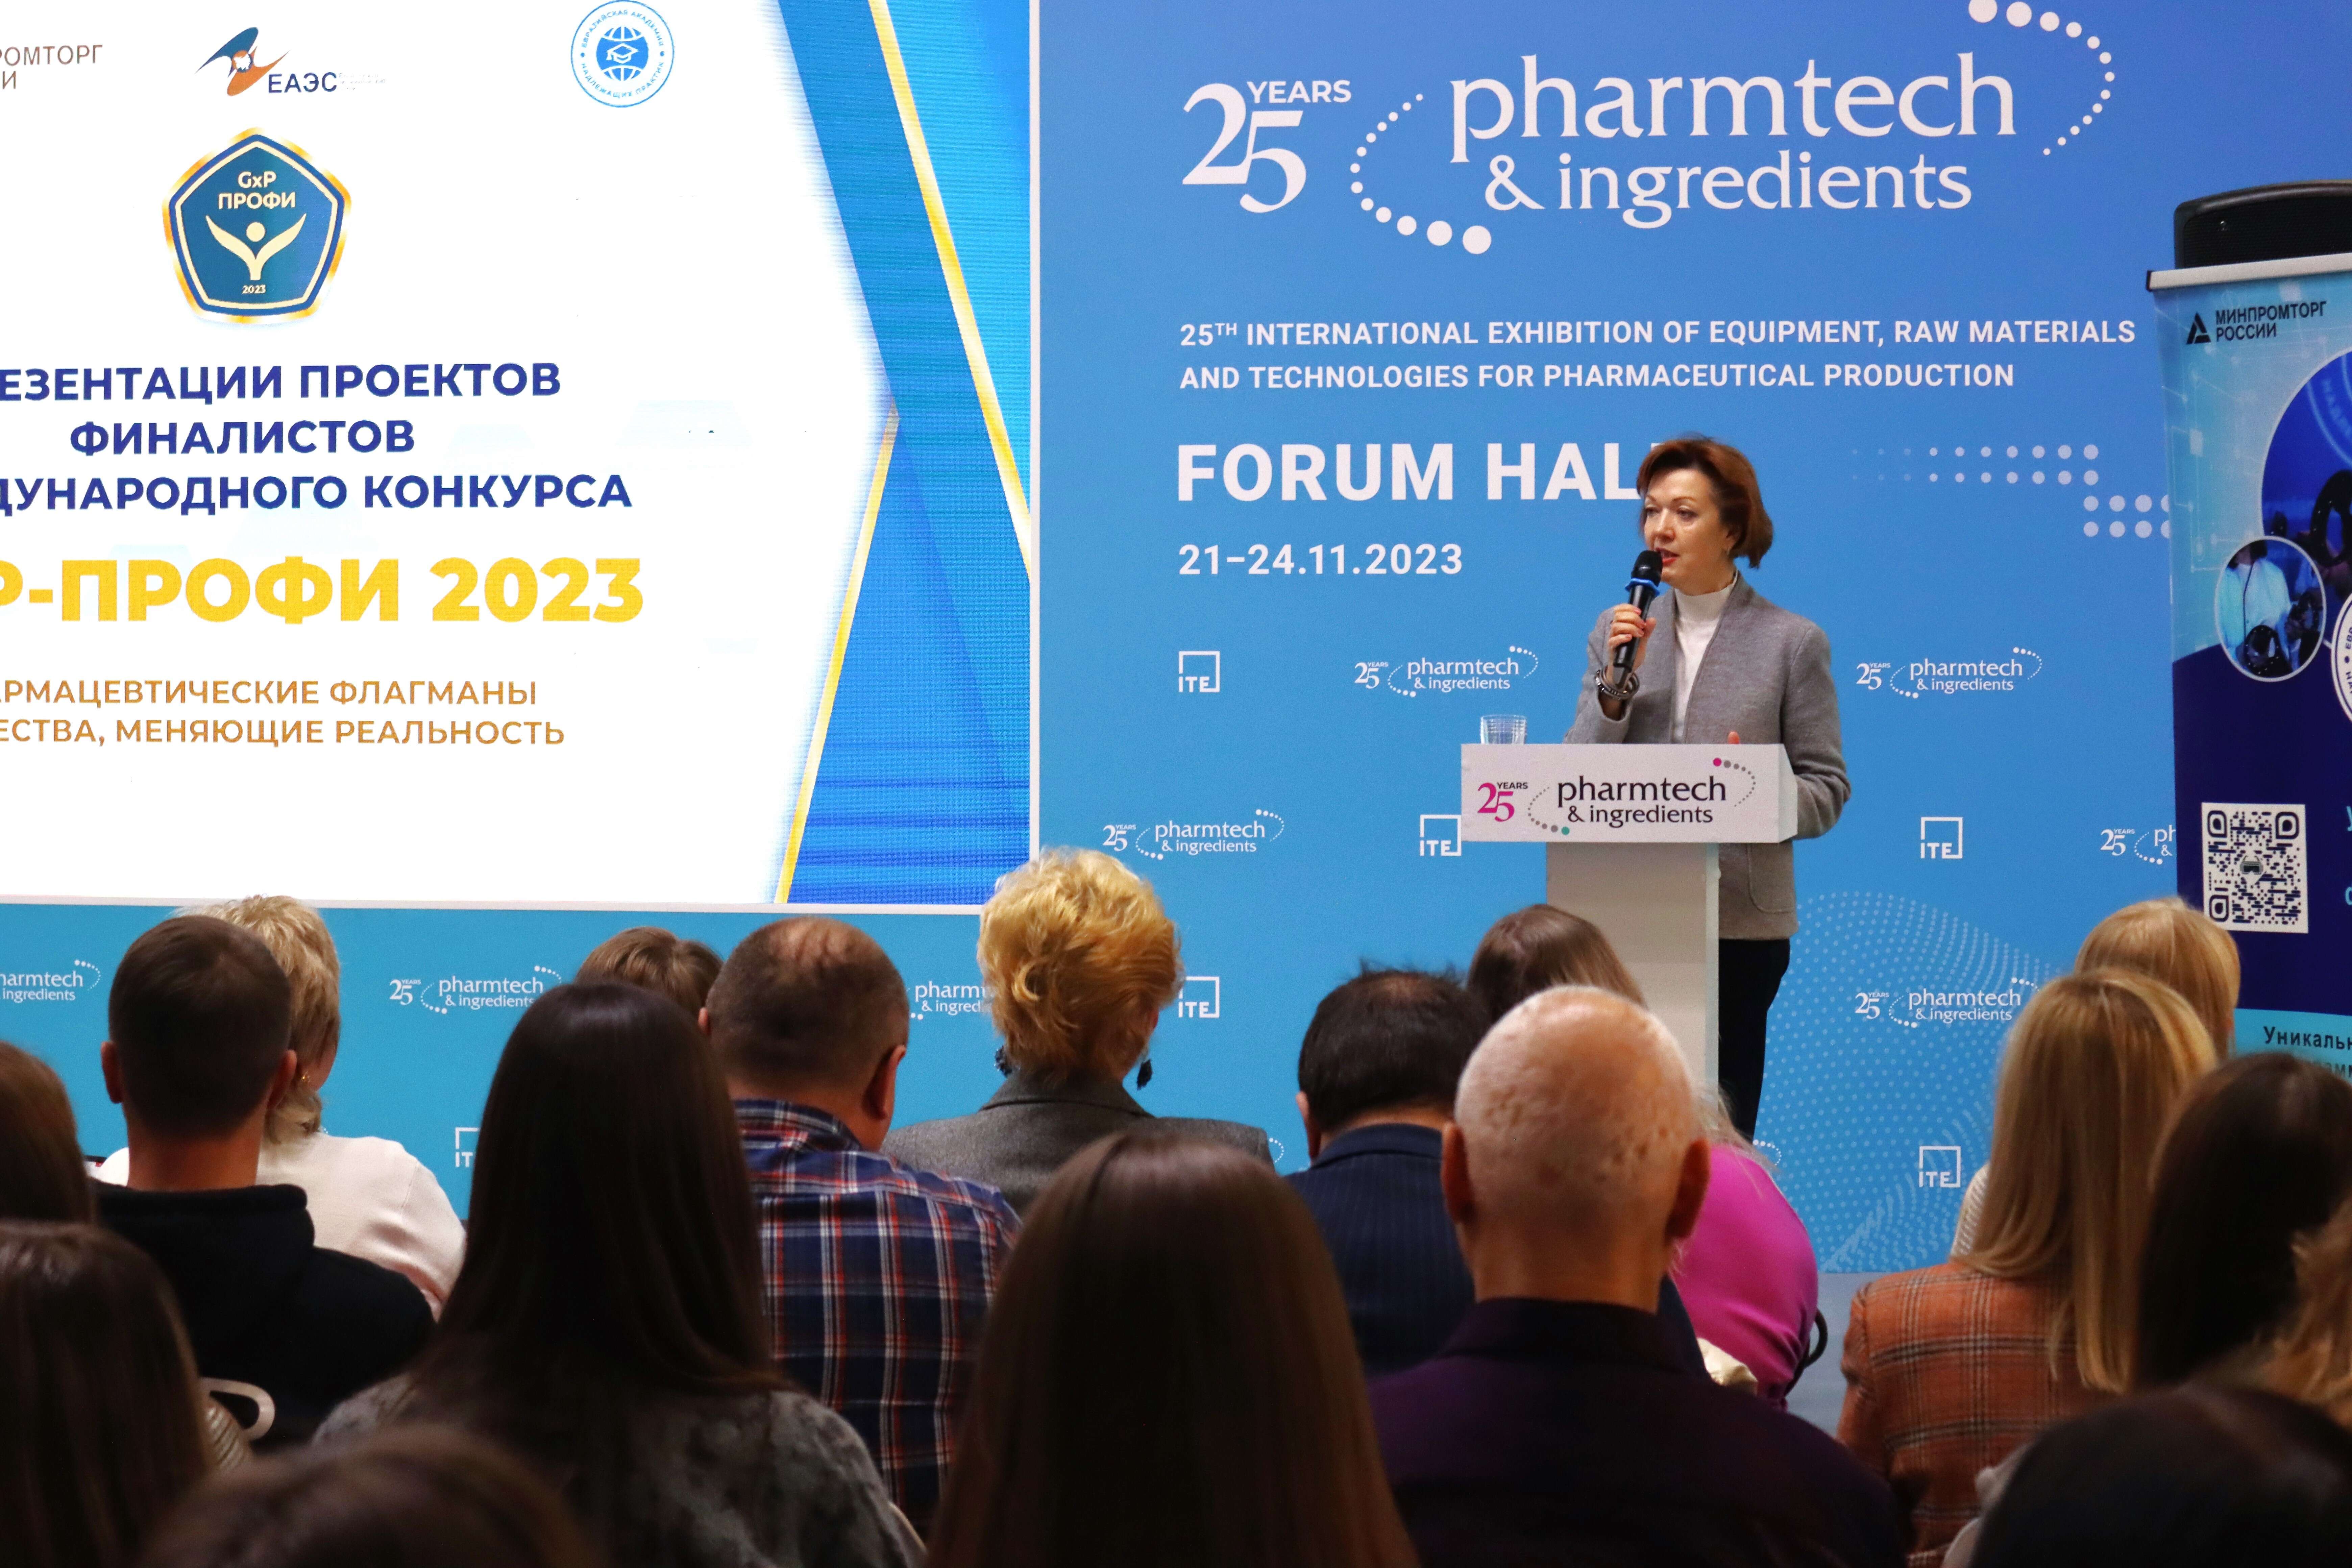 Исполнительный директор Союза профессиональных фармацевтических организаций Лилия Викторовна Титова отмечает день рождения